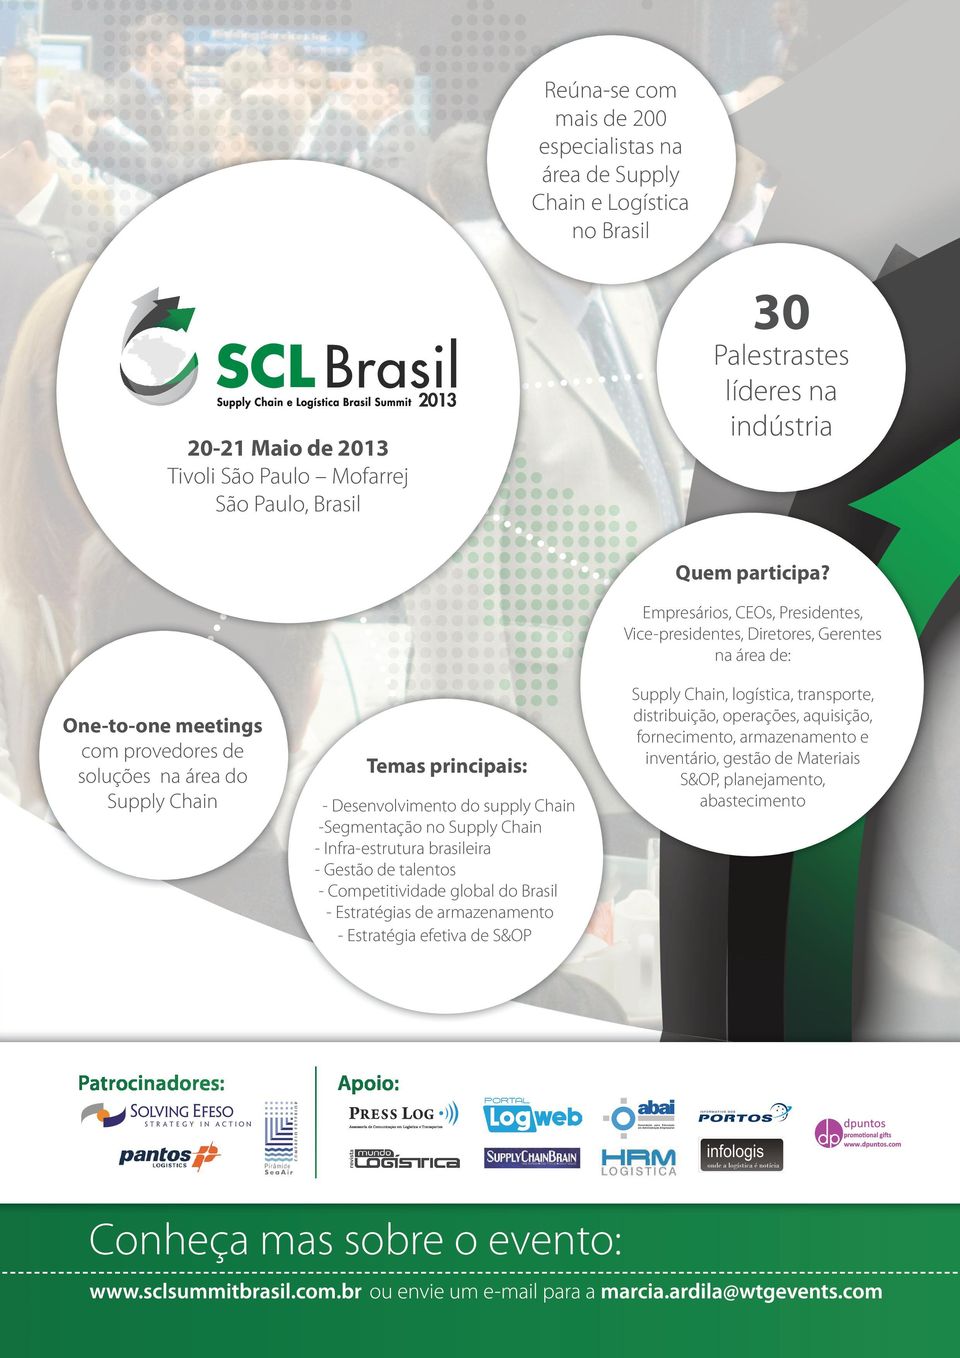 Desenvolvimento do supply Chain -Segmentação no Supply Chain - Infra-estrutura brasileira - Gestão de talentos - Competitividade global do Brasil - Estratégias de armazenamento - Estratégia efetiva